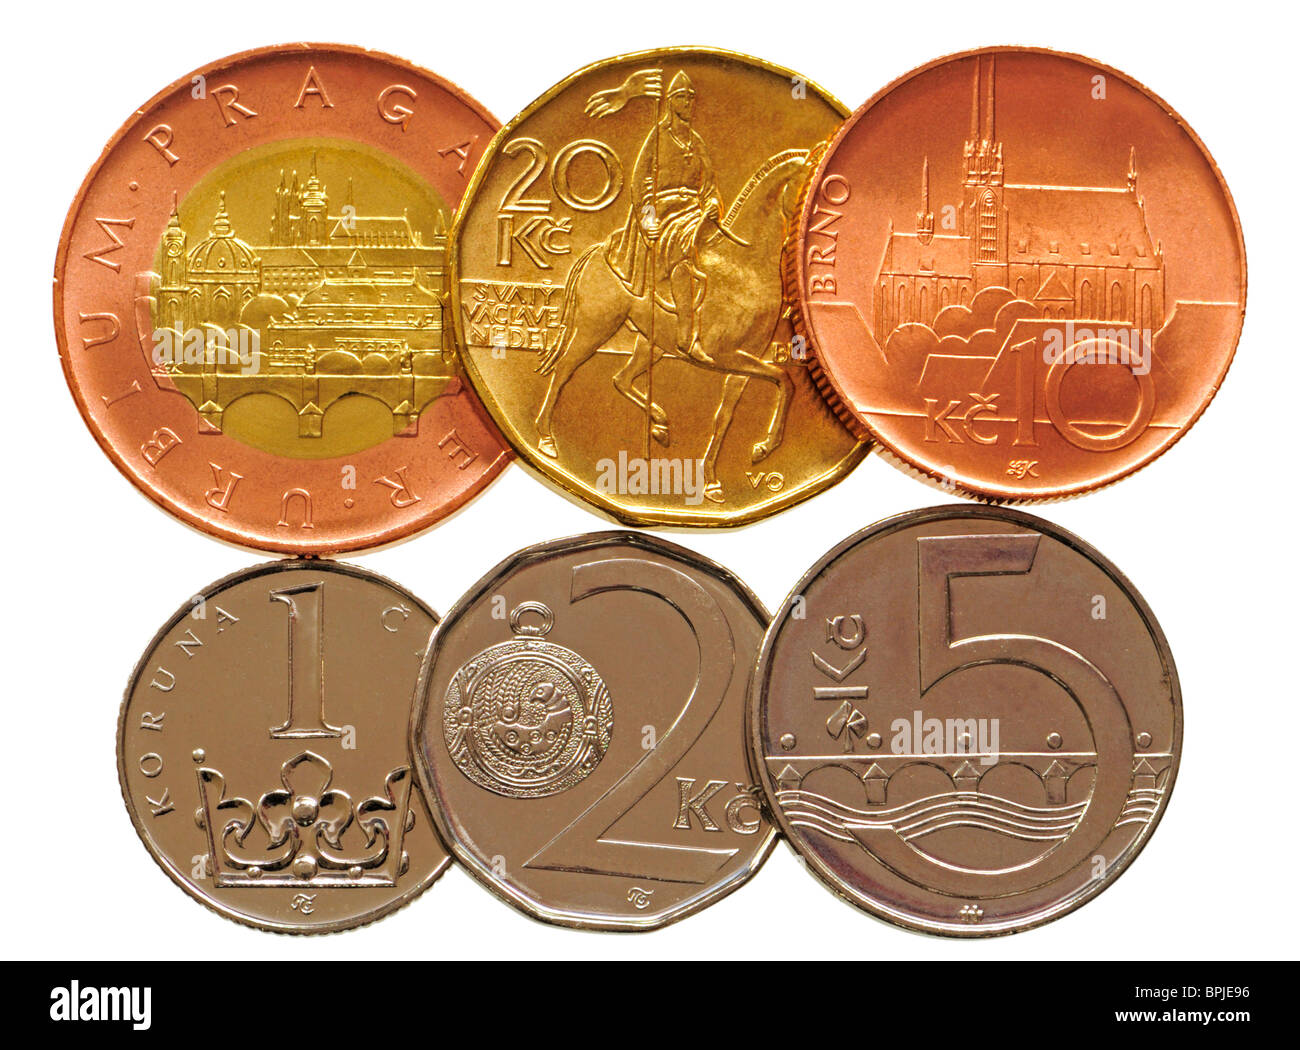 Tschechische Münzen von 1 bis 50 Kc (Kronen) derzeit gültige Währung in der Tschechischen Republik Stockfoto